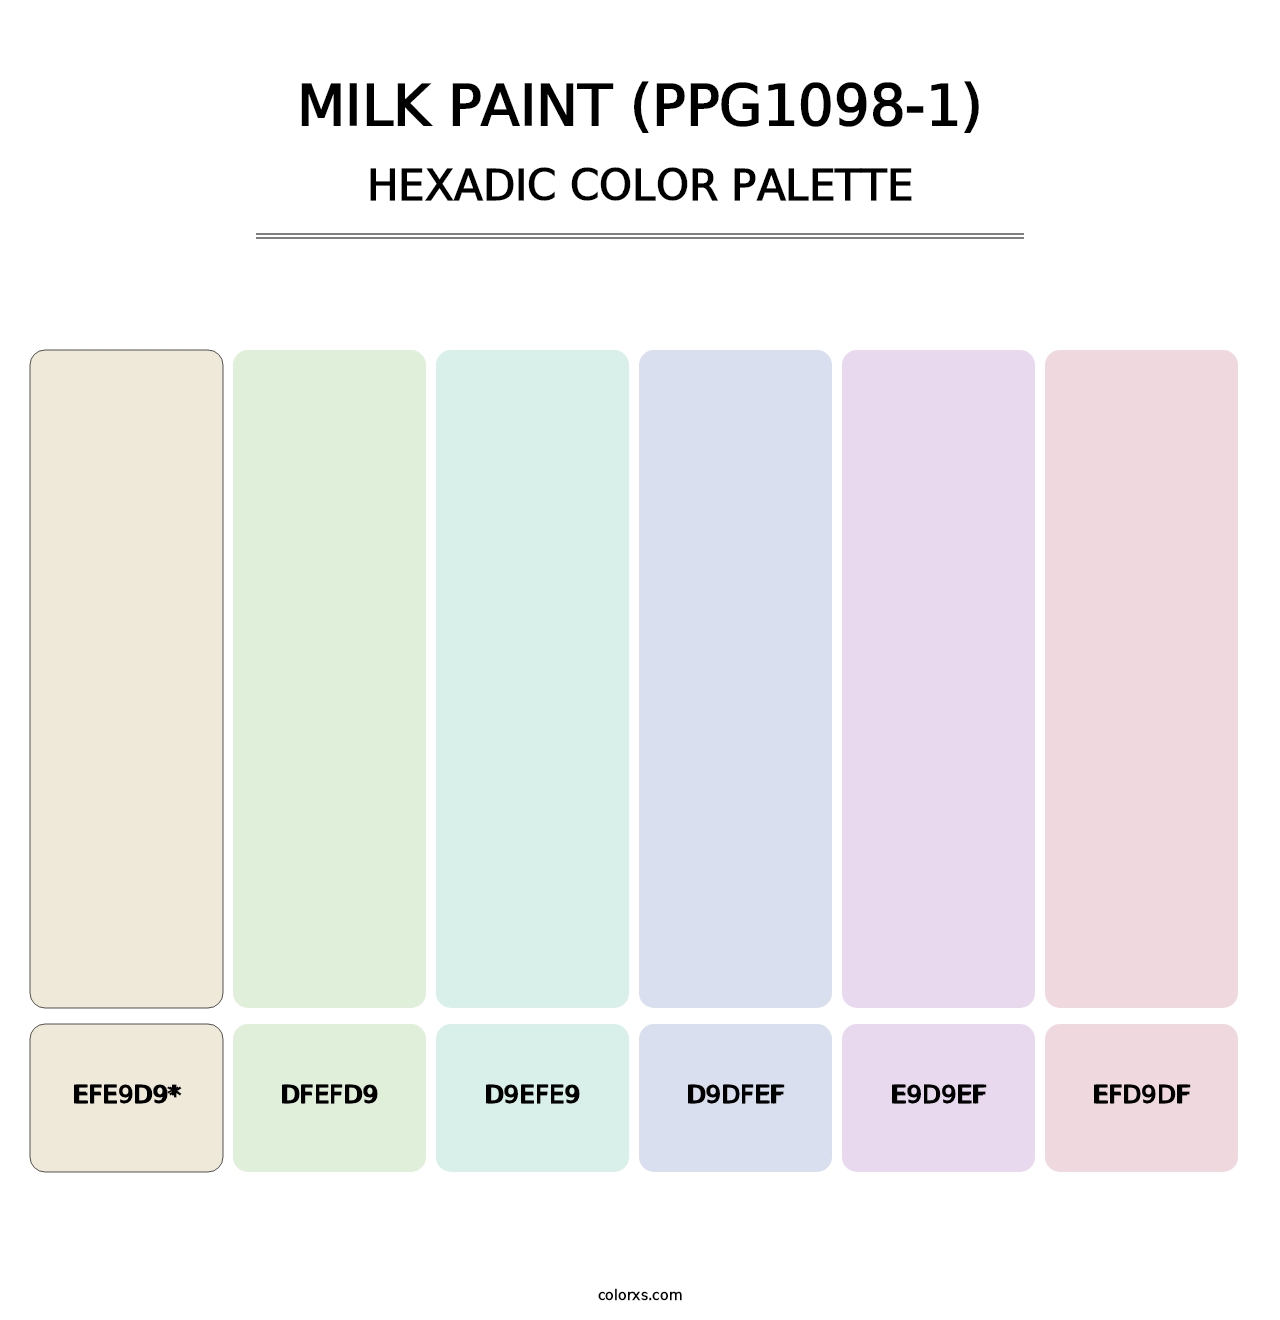 Milk Paint (PPG1098-1) - Hexadic Color Palette